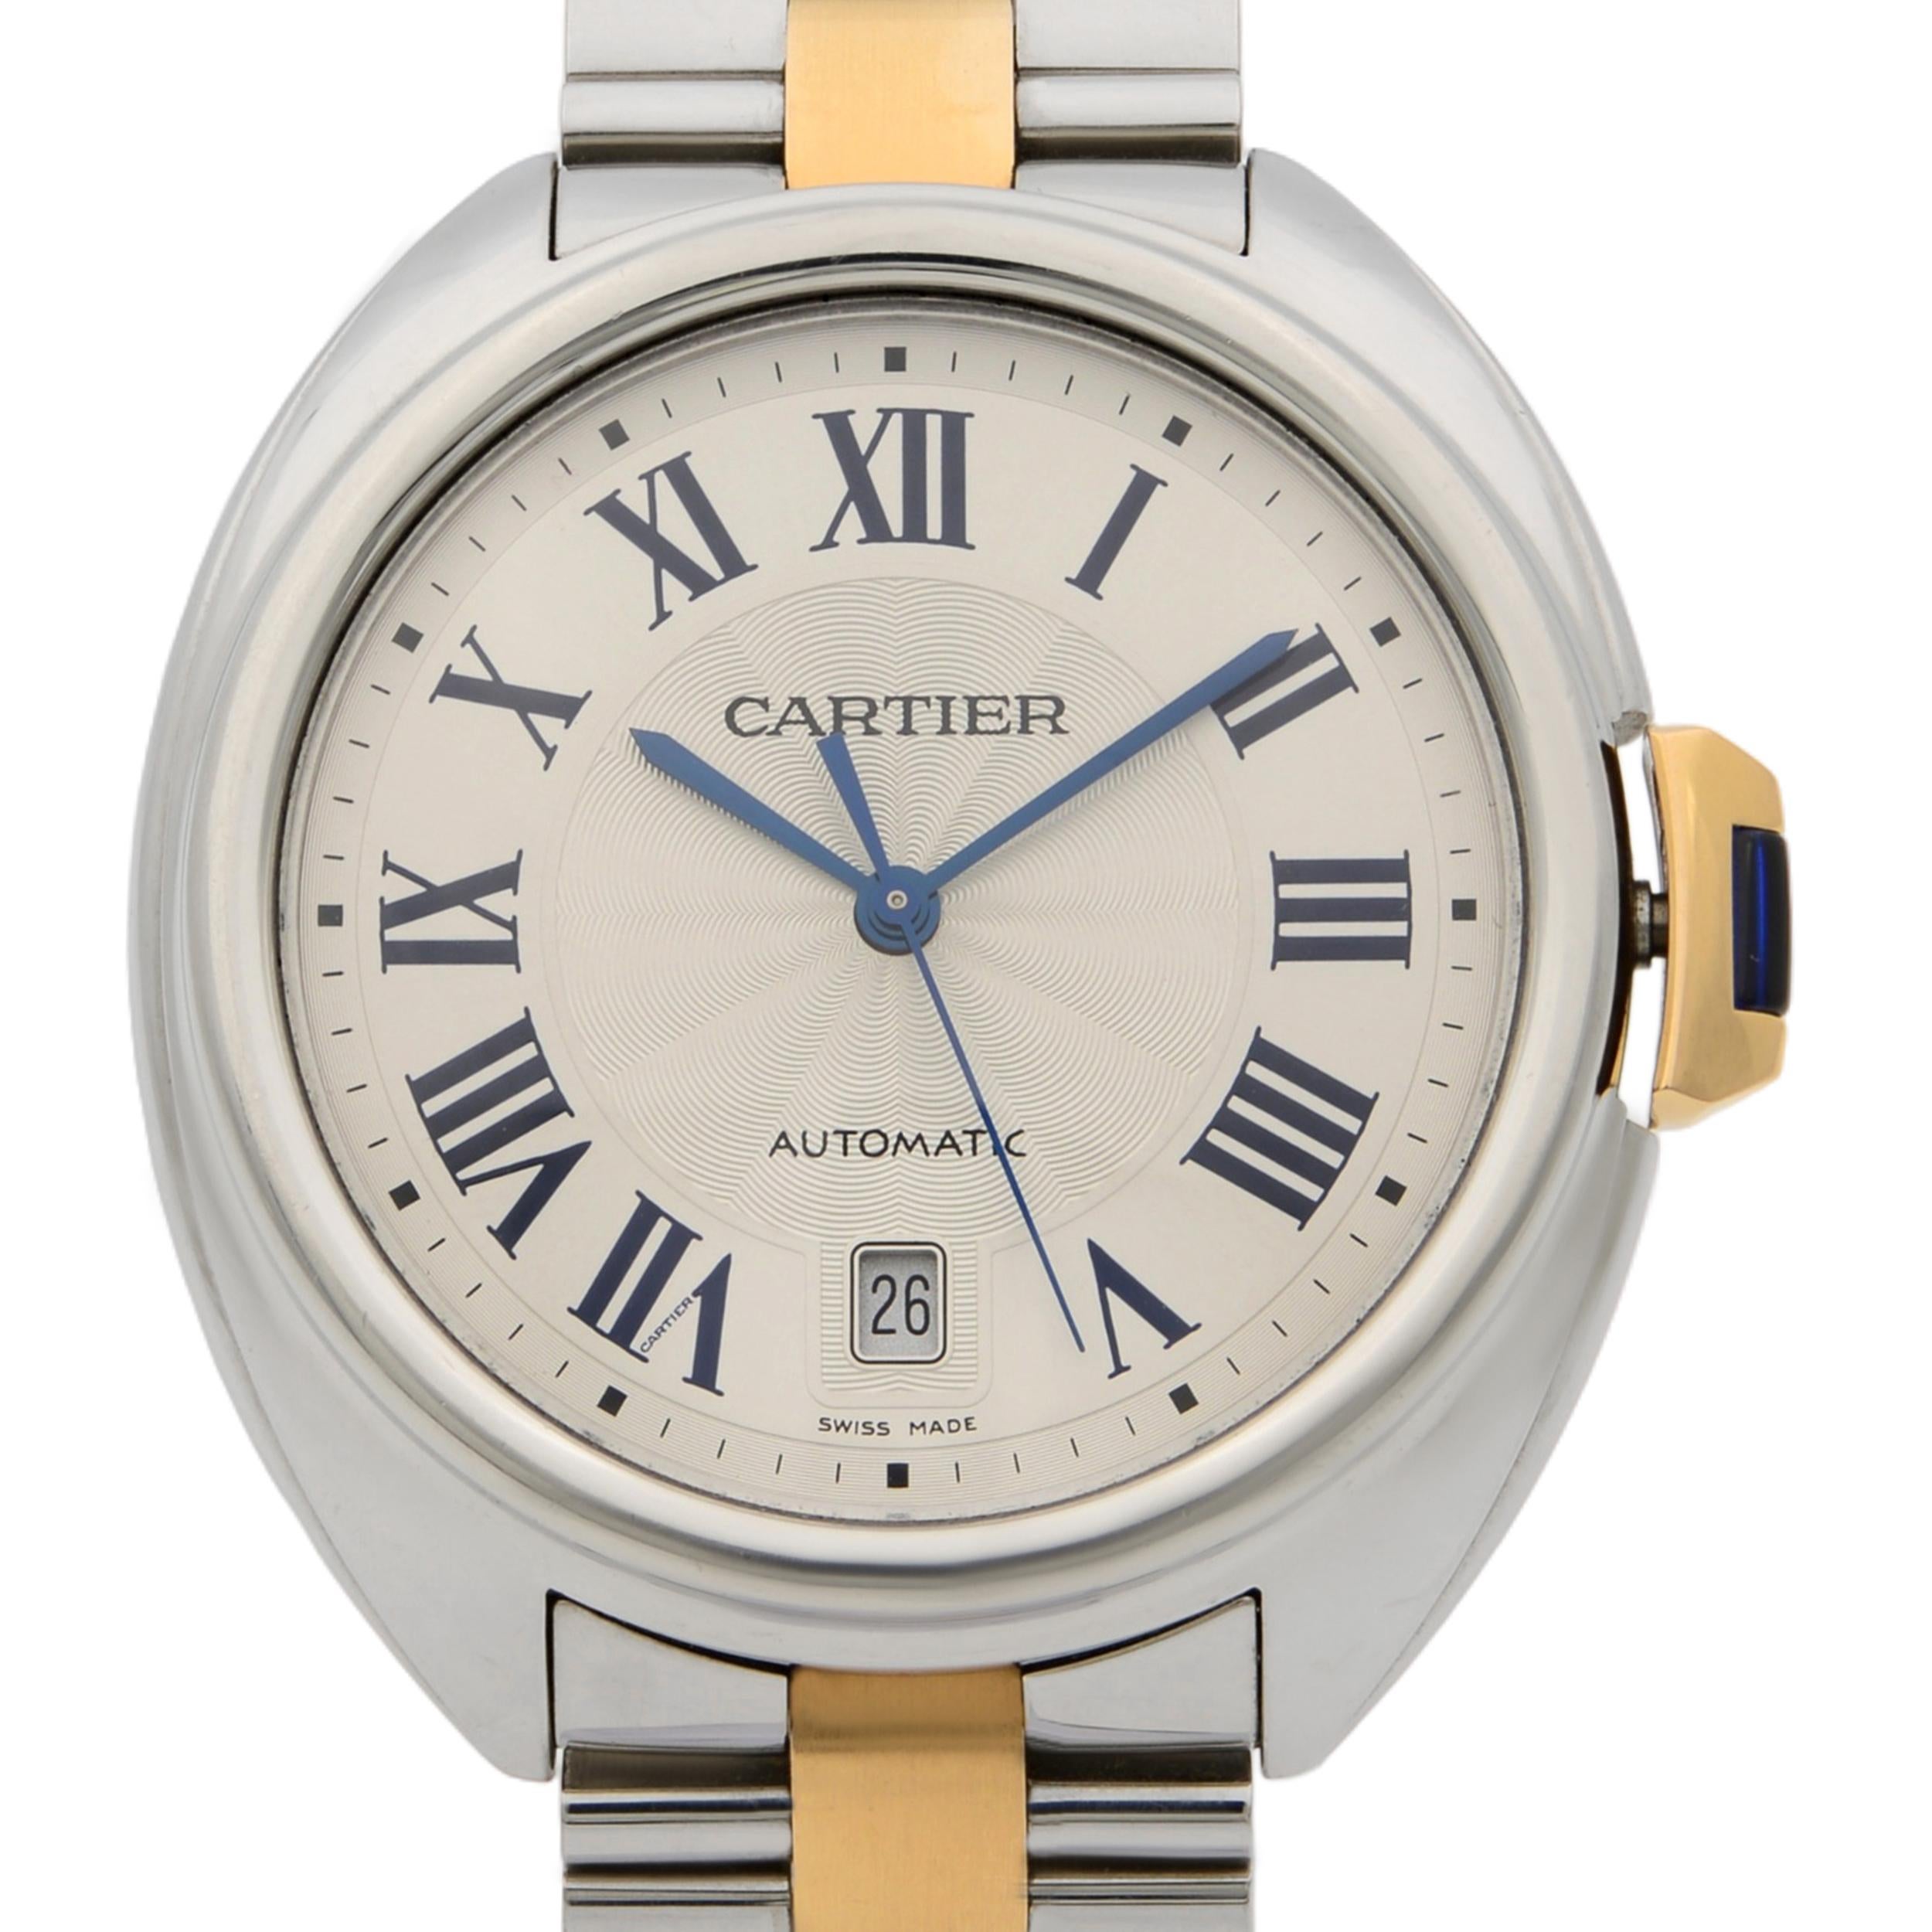 Cette montre d'occasion Cartier Cle De Cartier W2CL0002 est une belle pièce d'horlogerie masculine animée par un mouvement mécanique (automatique) qui est logé dans un boîtier en acier inoxydable. Elle présente un visage de forme ronde, un cadran